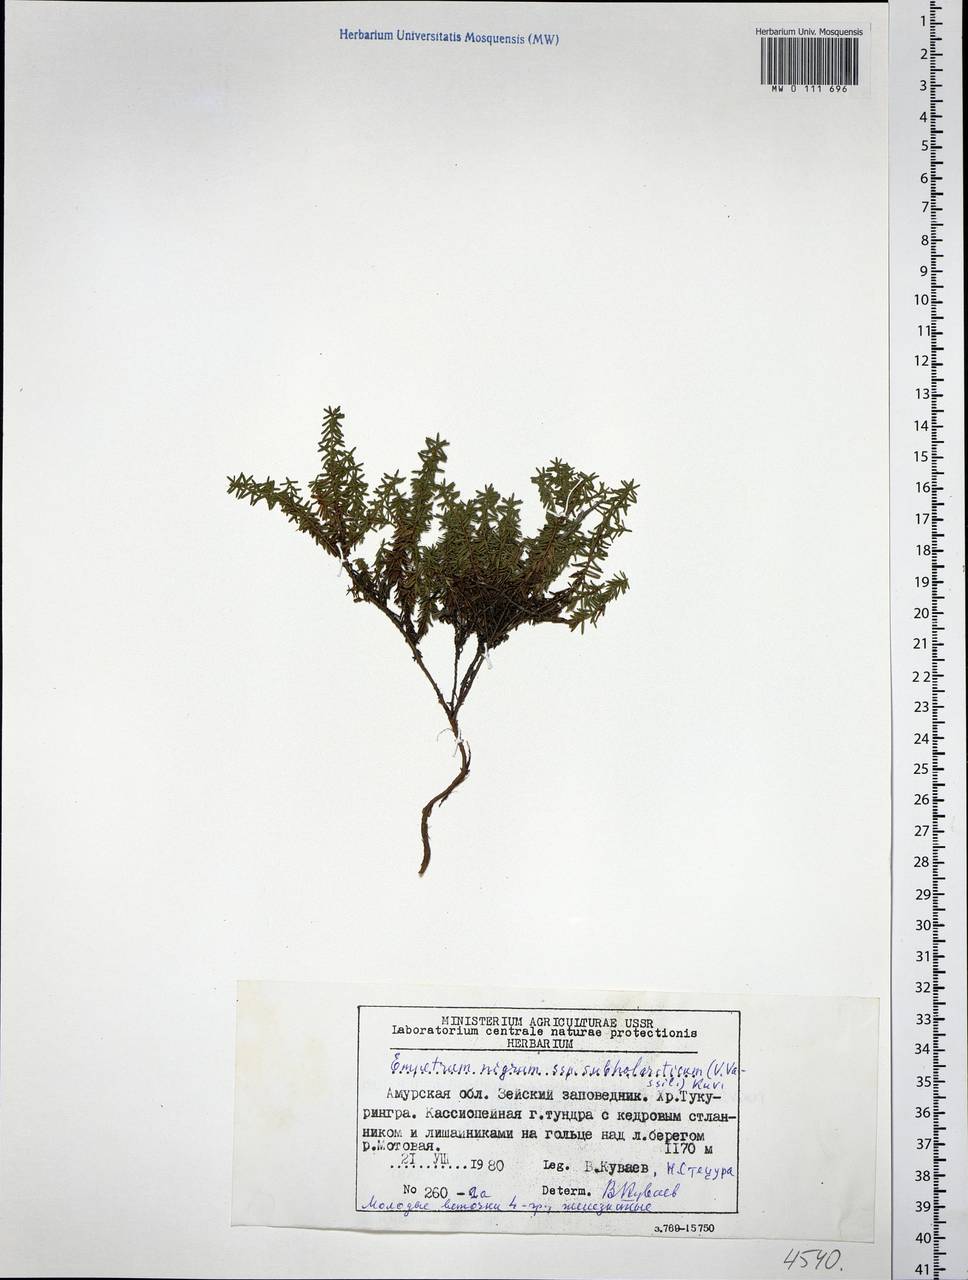 Empetrum nigrum subsp. subholarcticum (V. N. Vassil.) Kuvaev, Siberia, Russian Far East (S6) (Russia)